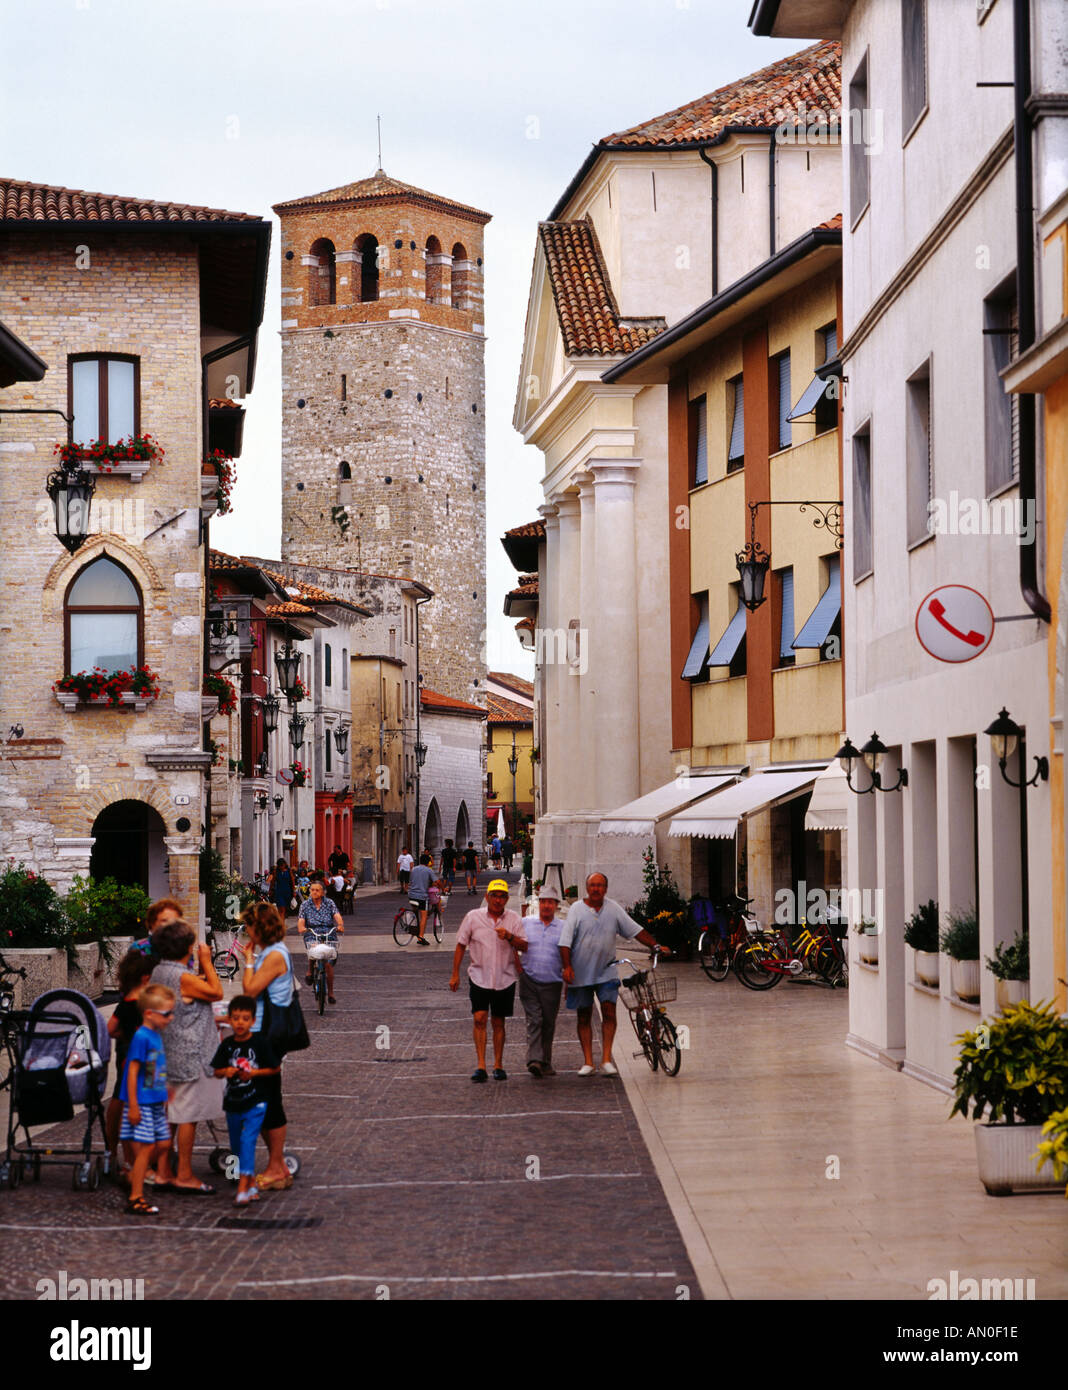 Street scene Marano Lagunare Friuli Italy Stock Photo